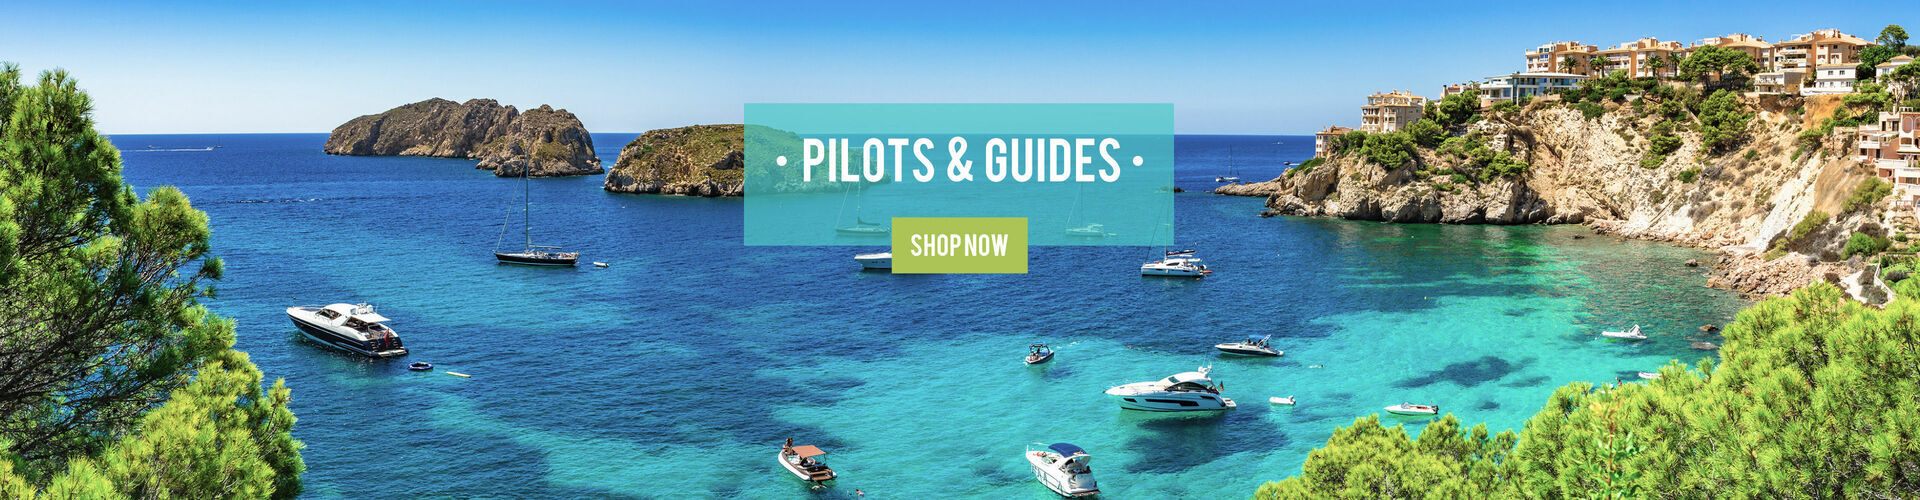 Pilots & Guides